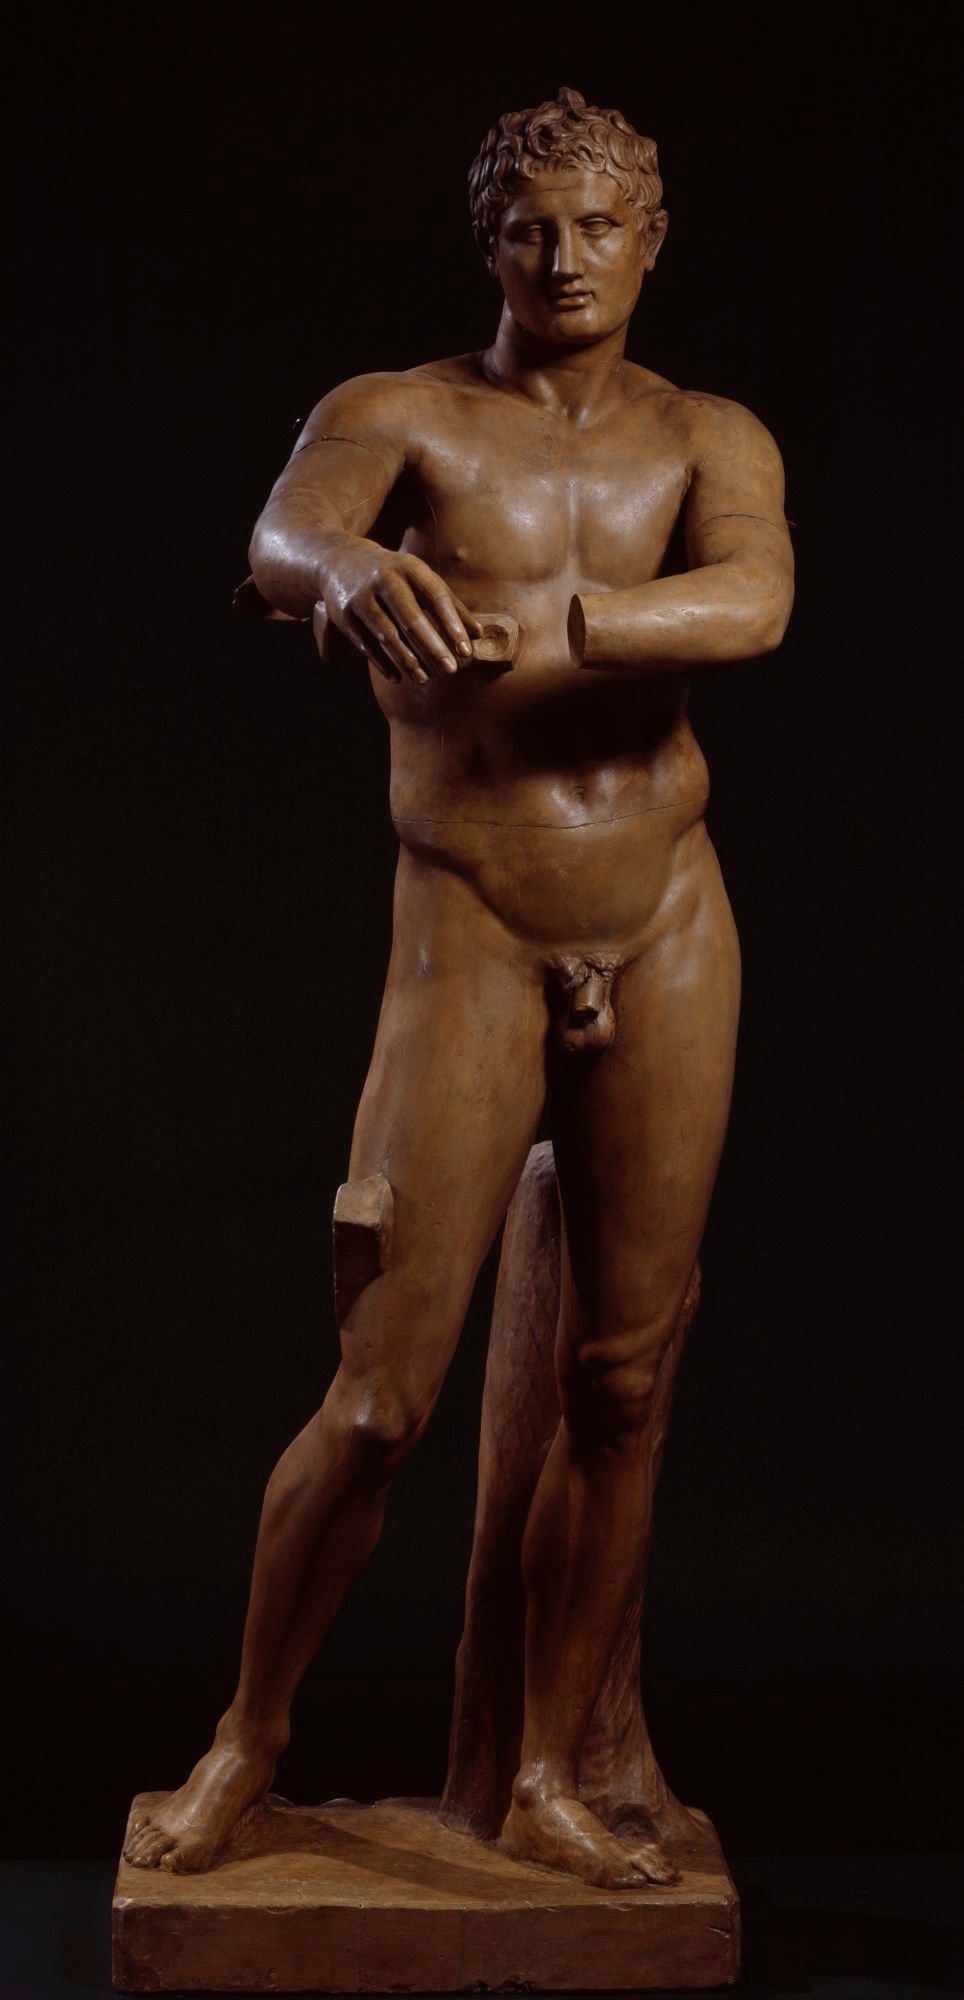 大英博物館 ダビデ像の目 The Brucciani Collection - 彫刻/オブジェクト